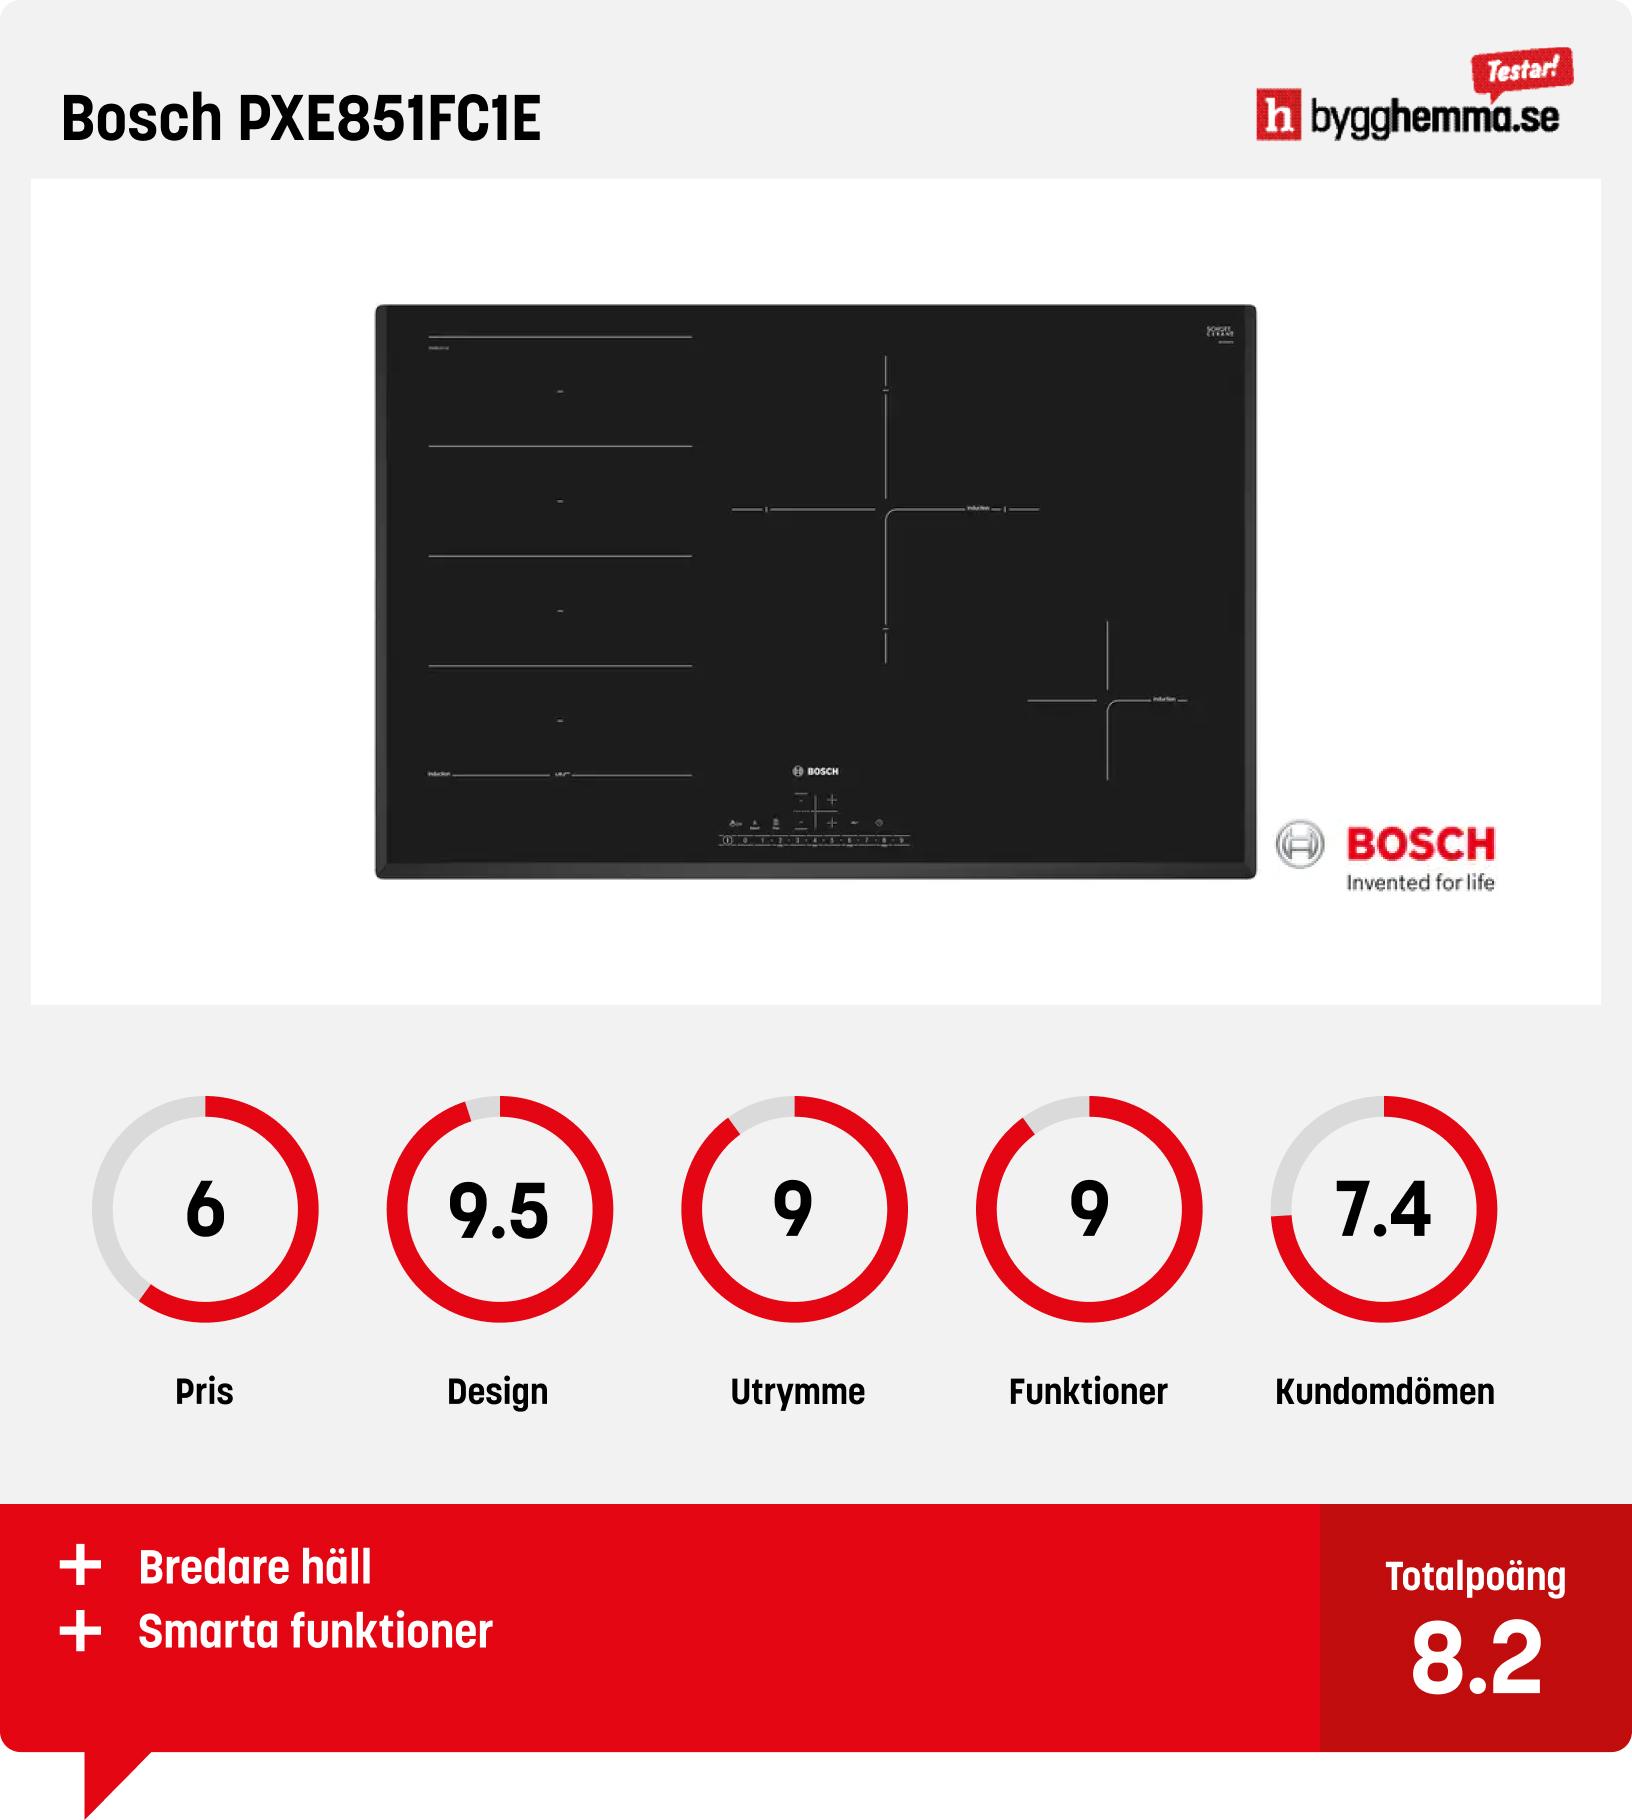 Bäst i test induktionshäll från Bosch